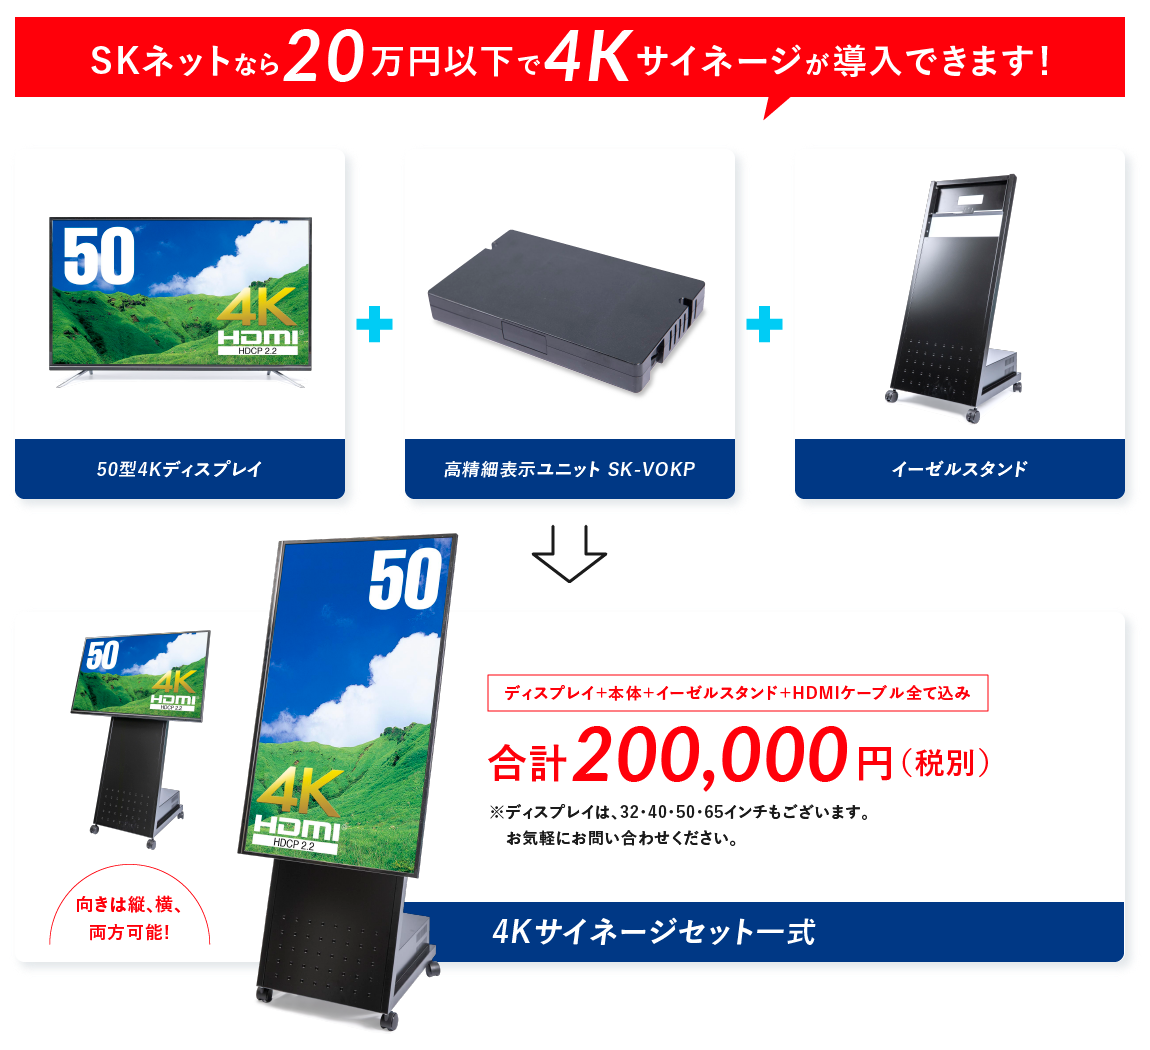 4Kサイネージセット一式で購入できます。50型4Kディスプレイ、楽々看板君、イーゼルスタンド合計で税別20万円。